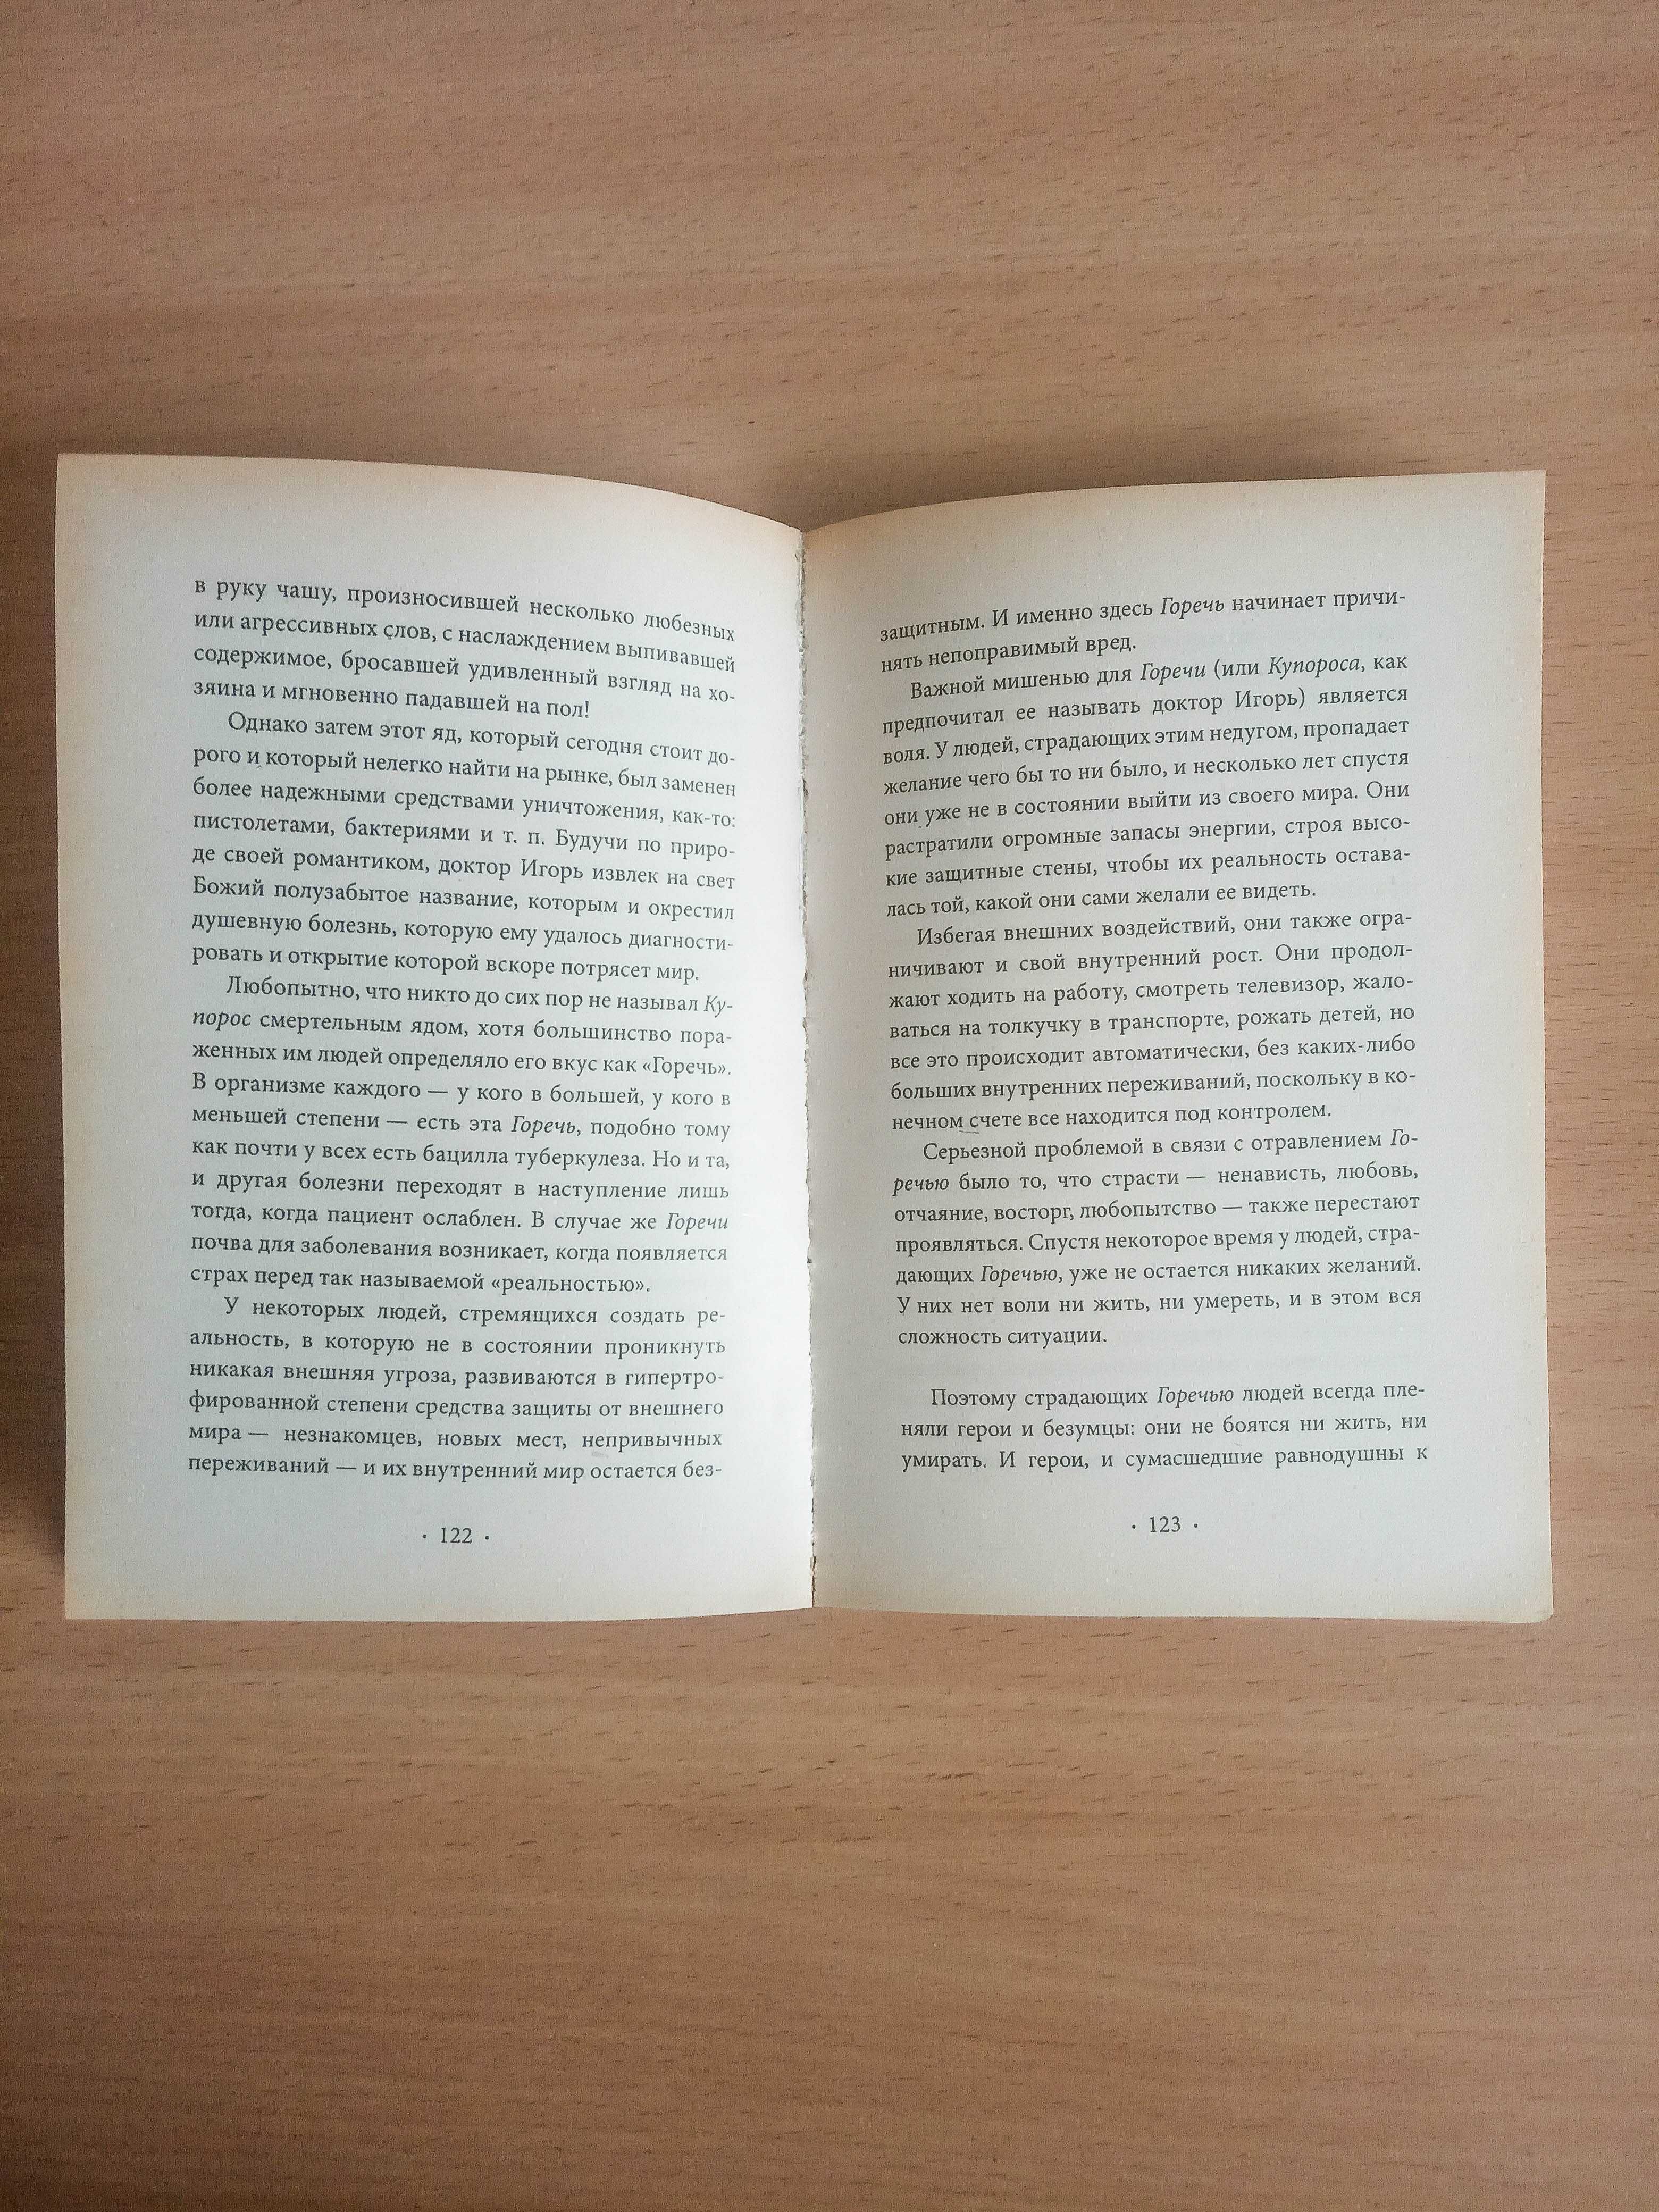 Пауло Коэльо книга «Вероника решает умереть» современная проза роман